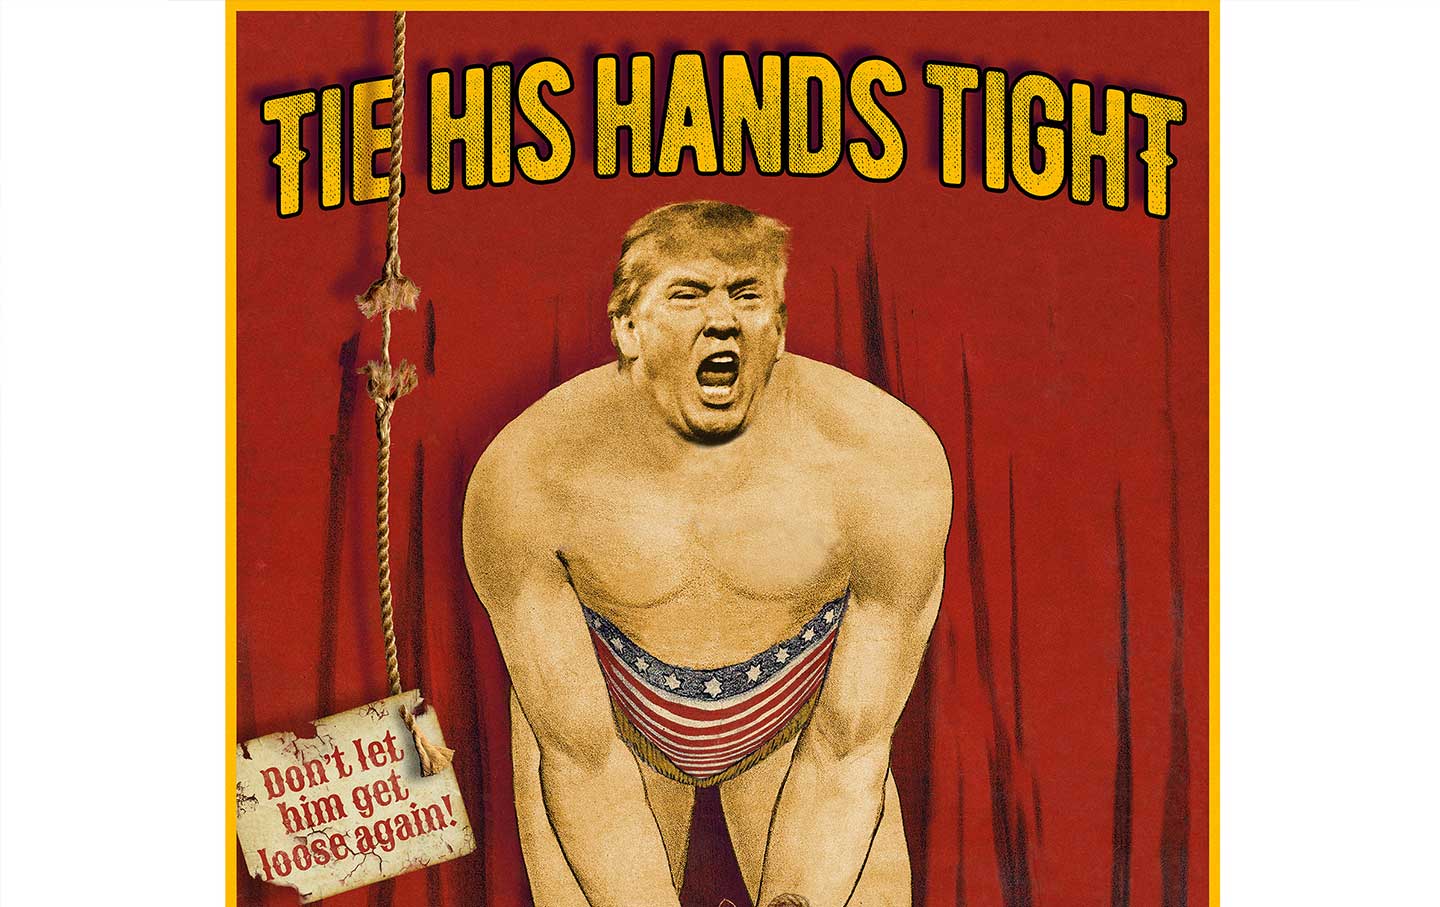 Tie His Hands